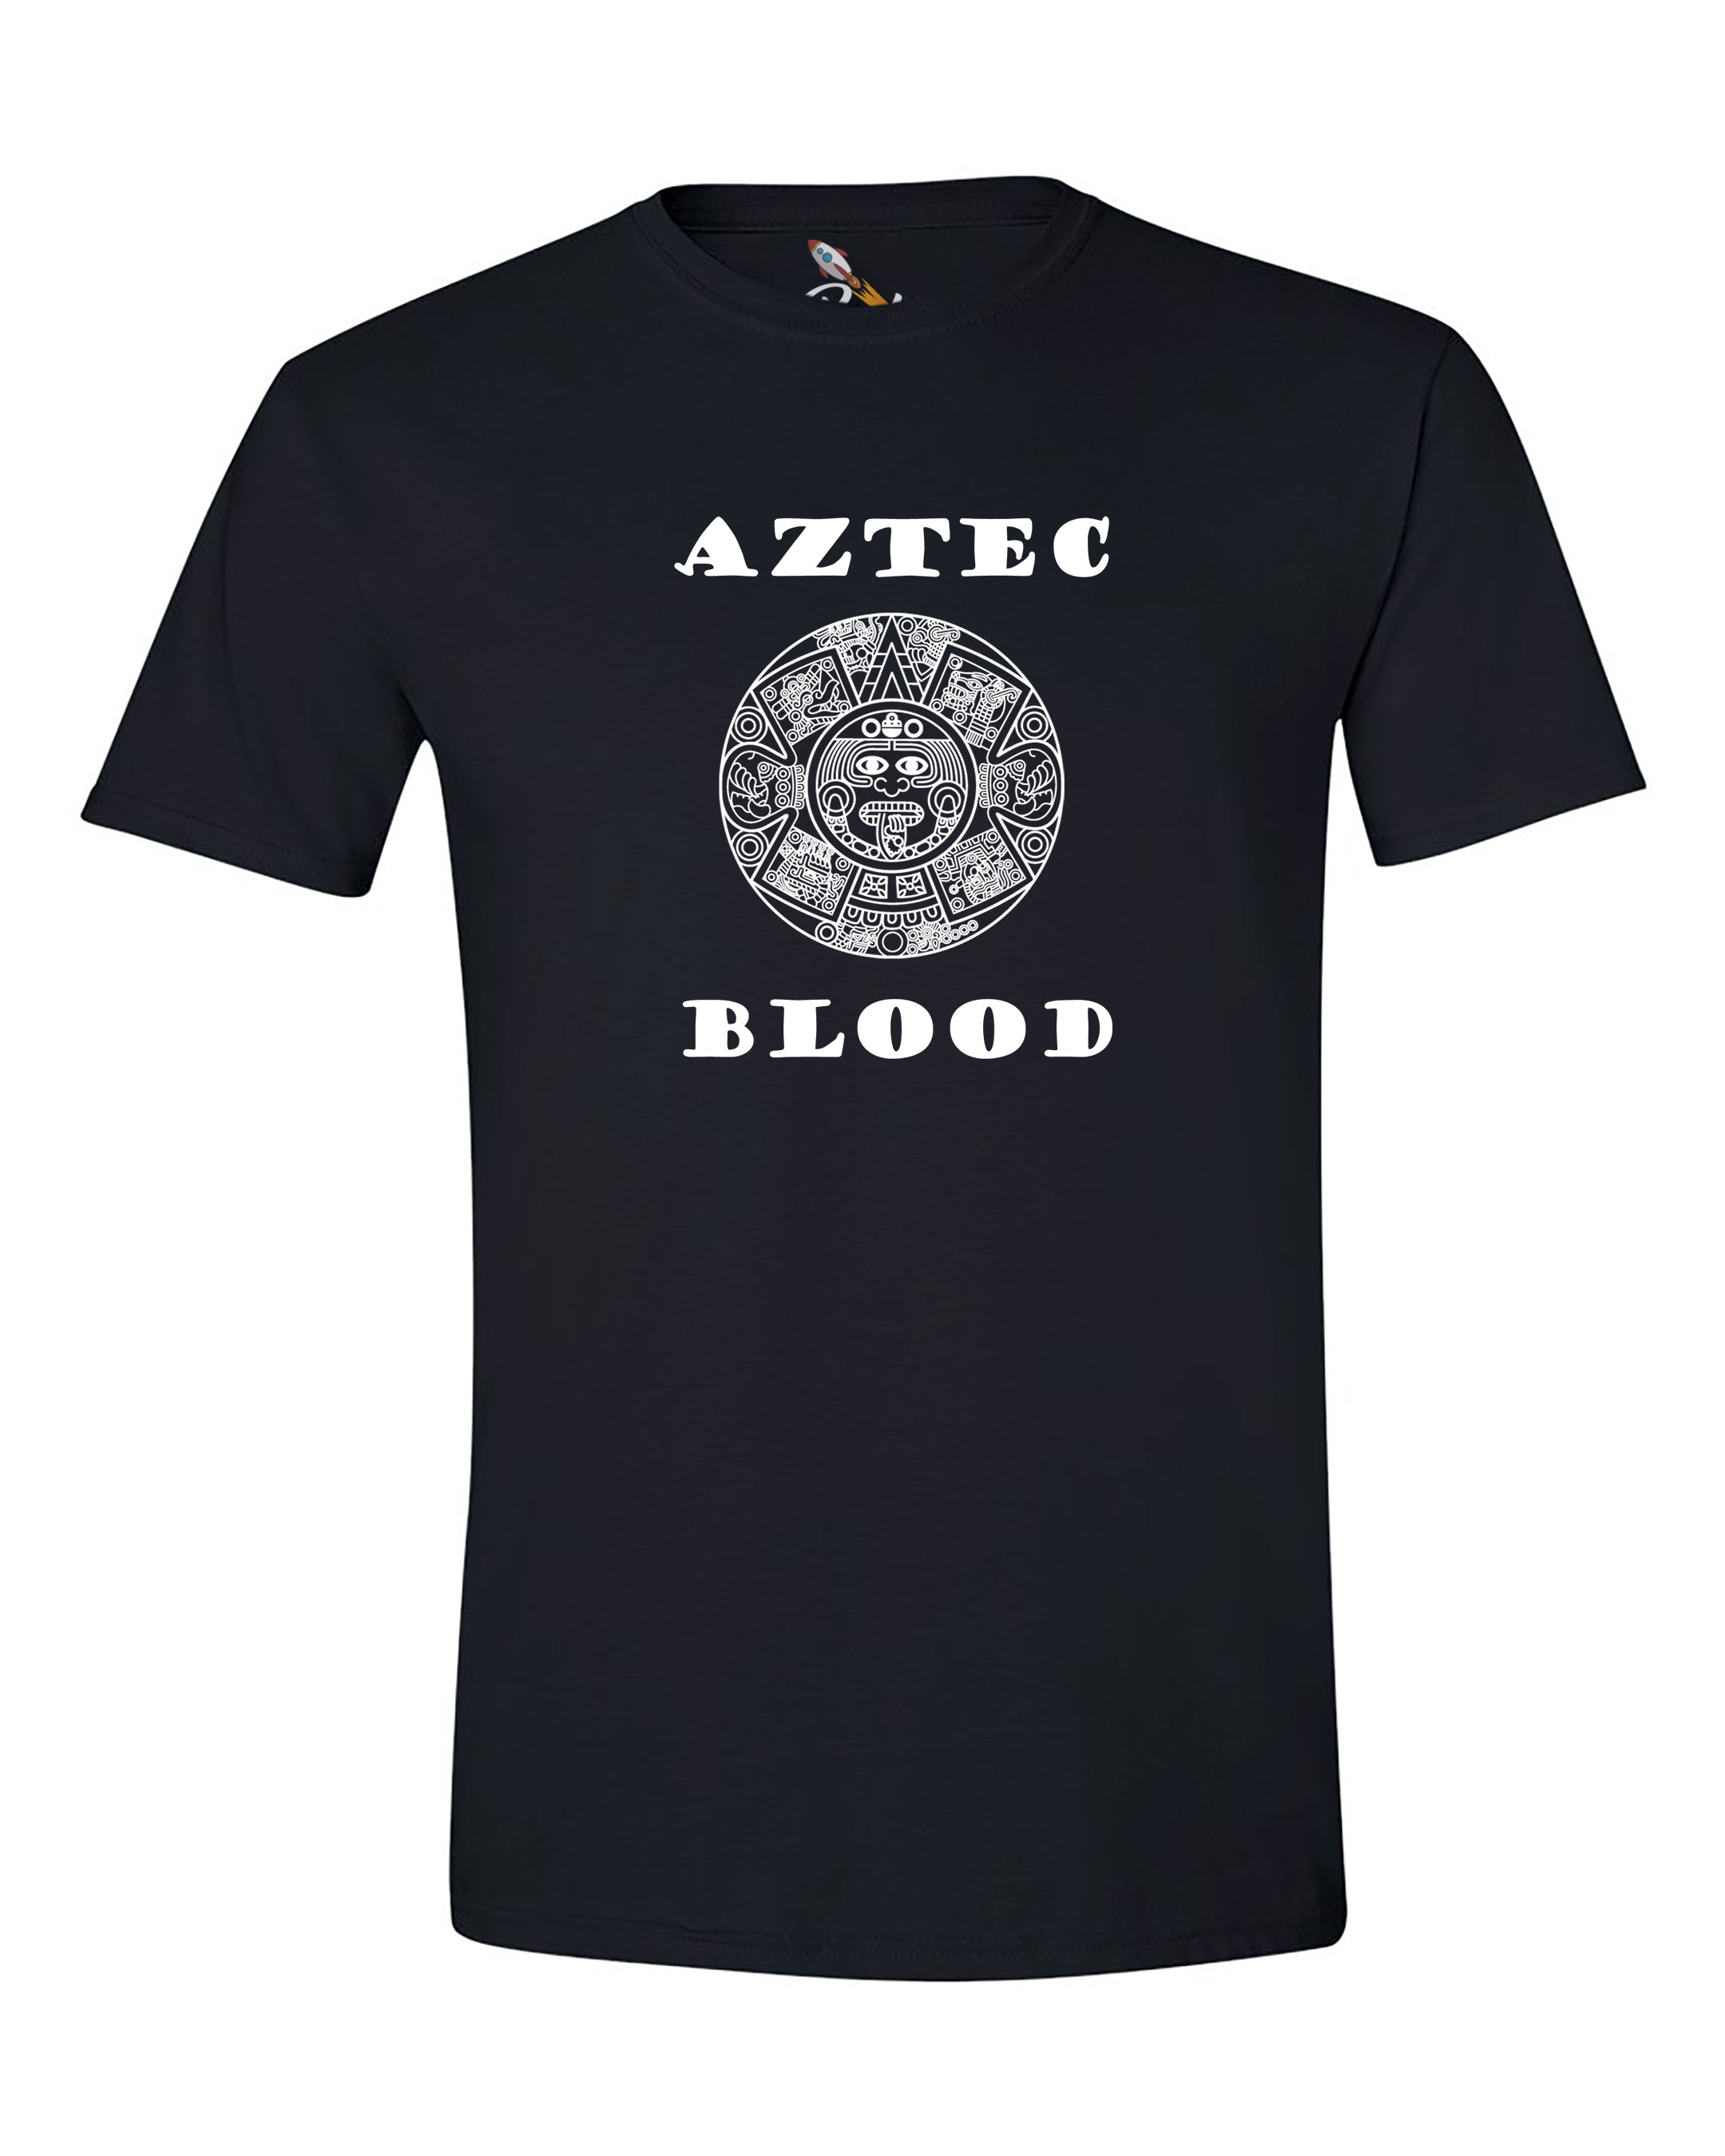 Aztec Blood Tee